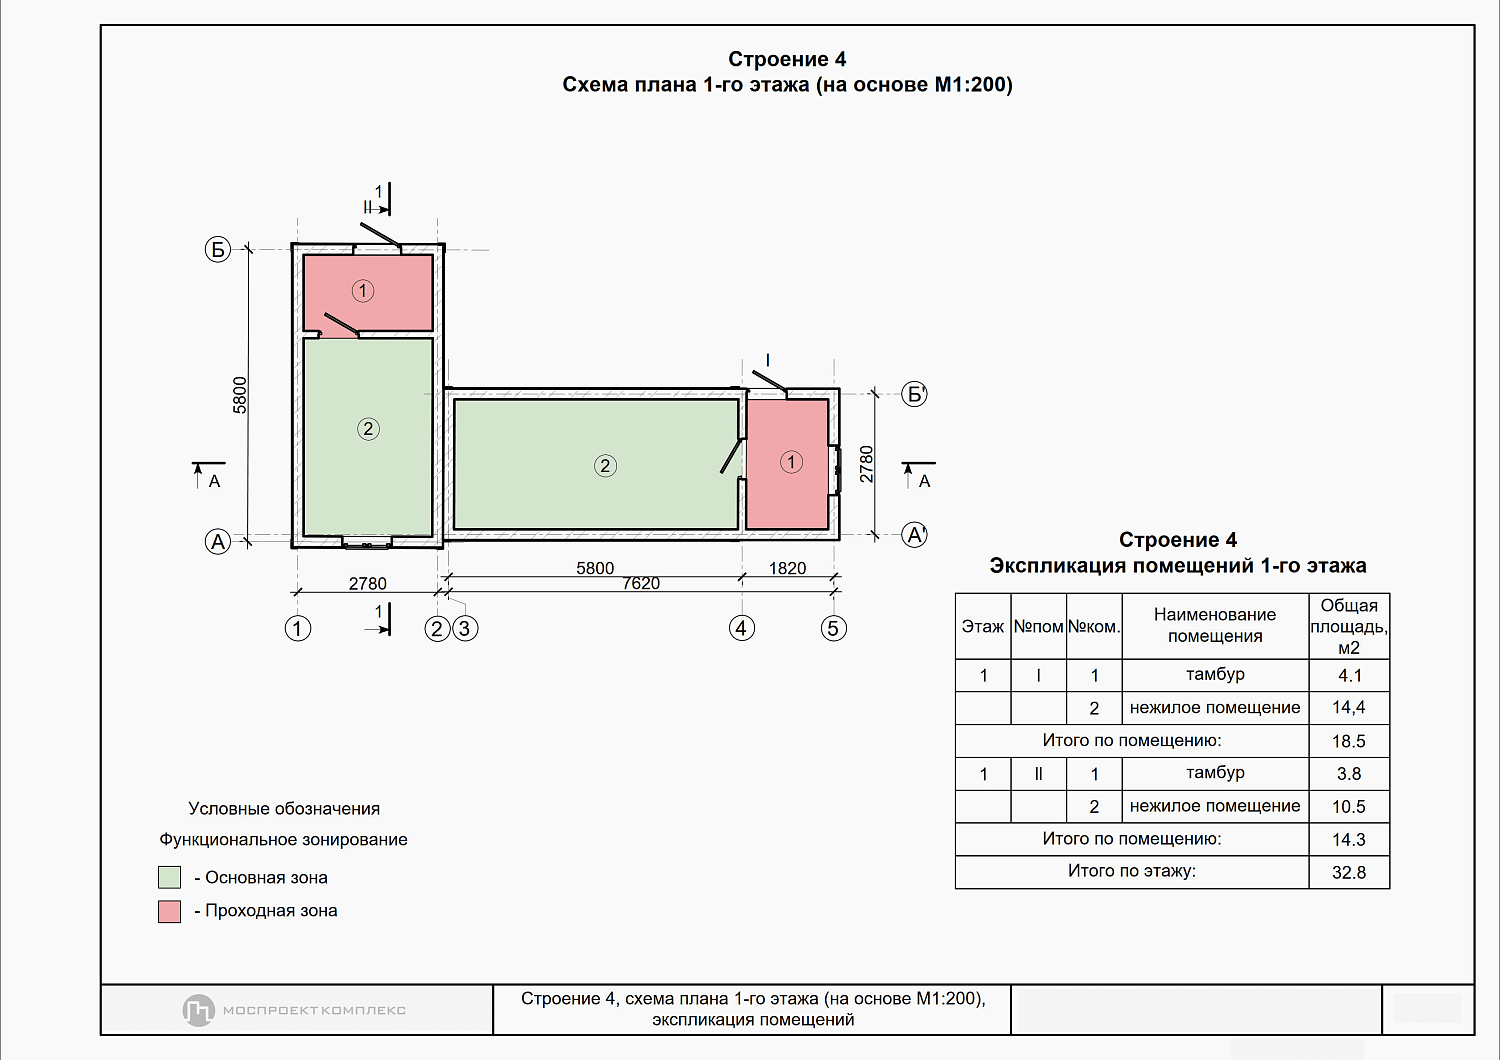 Размещение объектов некапитального строительства по 636-ПП Москвы